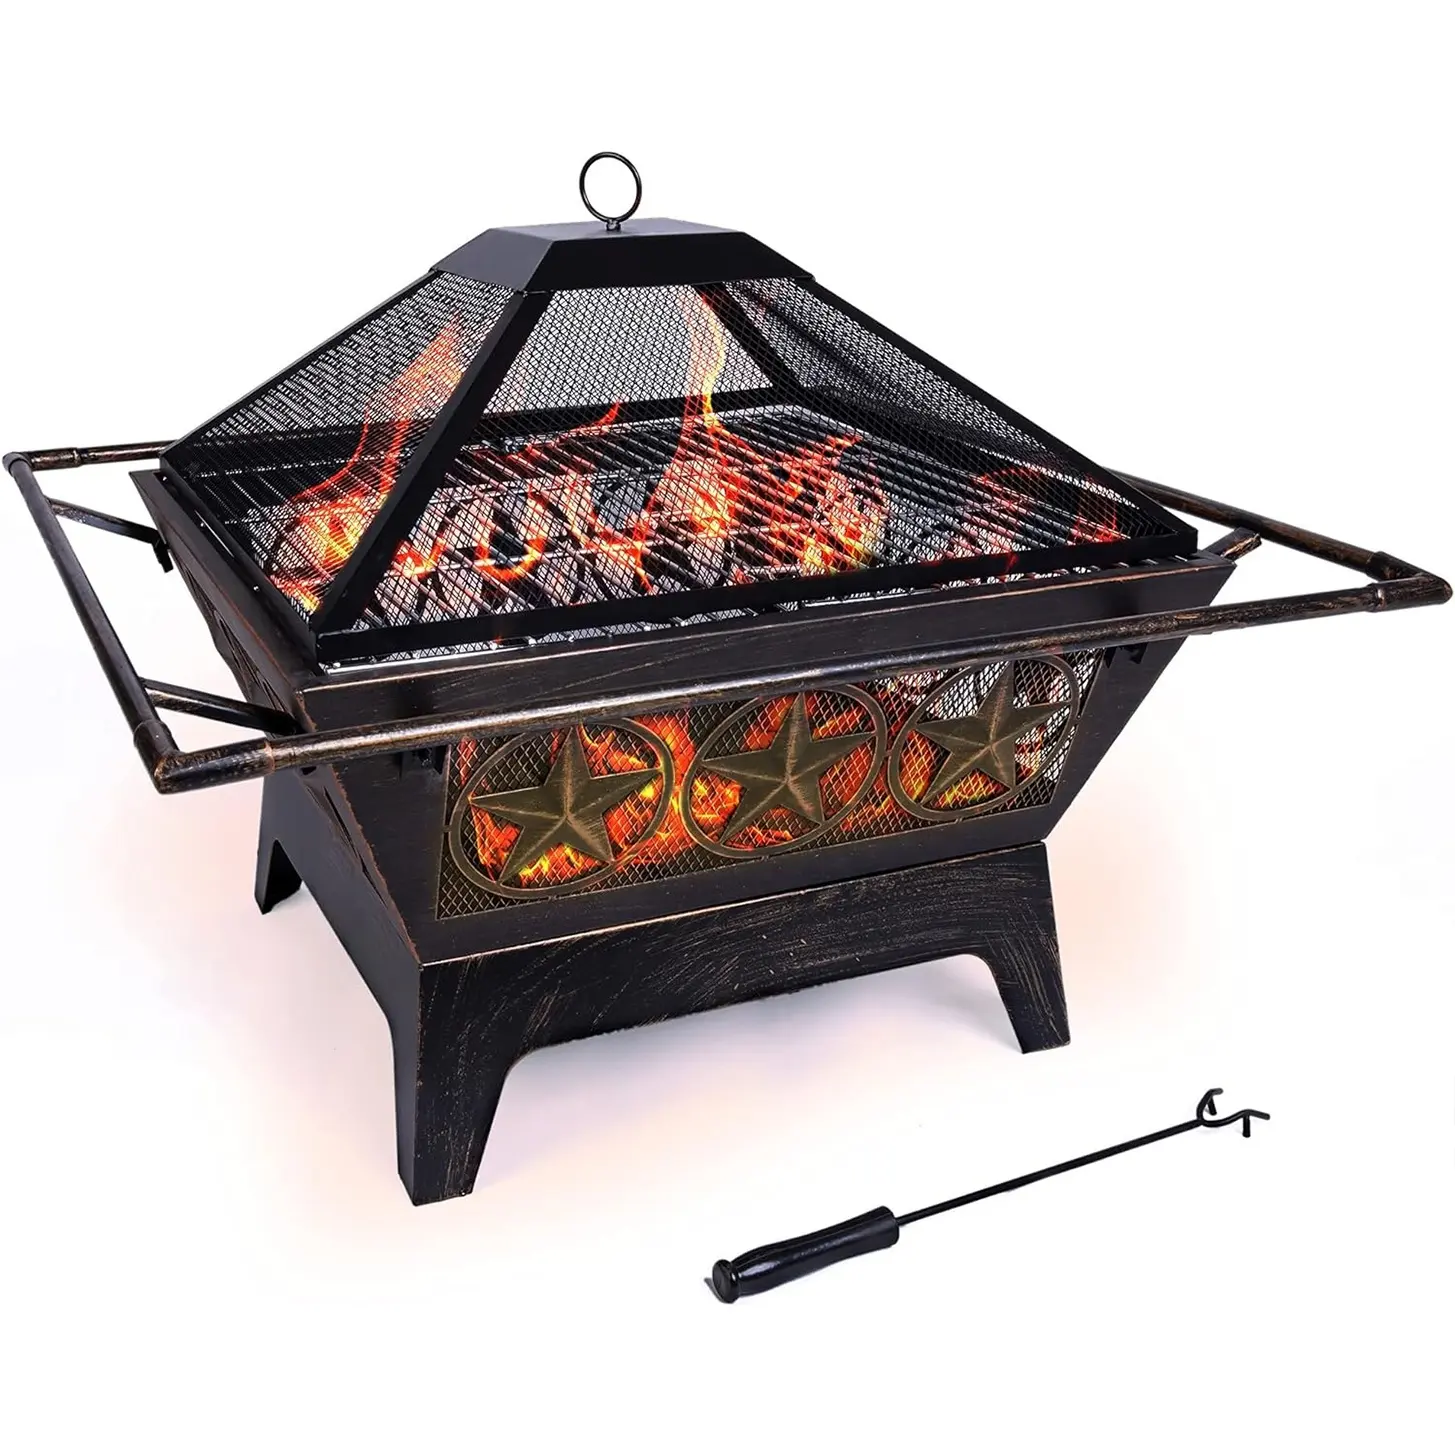 Fogueira de metal para jardim com design de estrela de 32 polegadas, fogueira de madeira para uso ao ar livre com churrasqueira dobrável